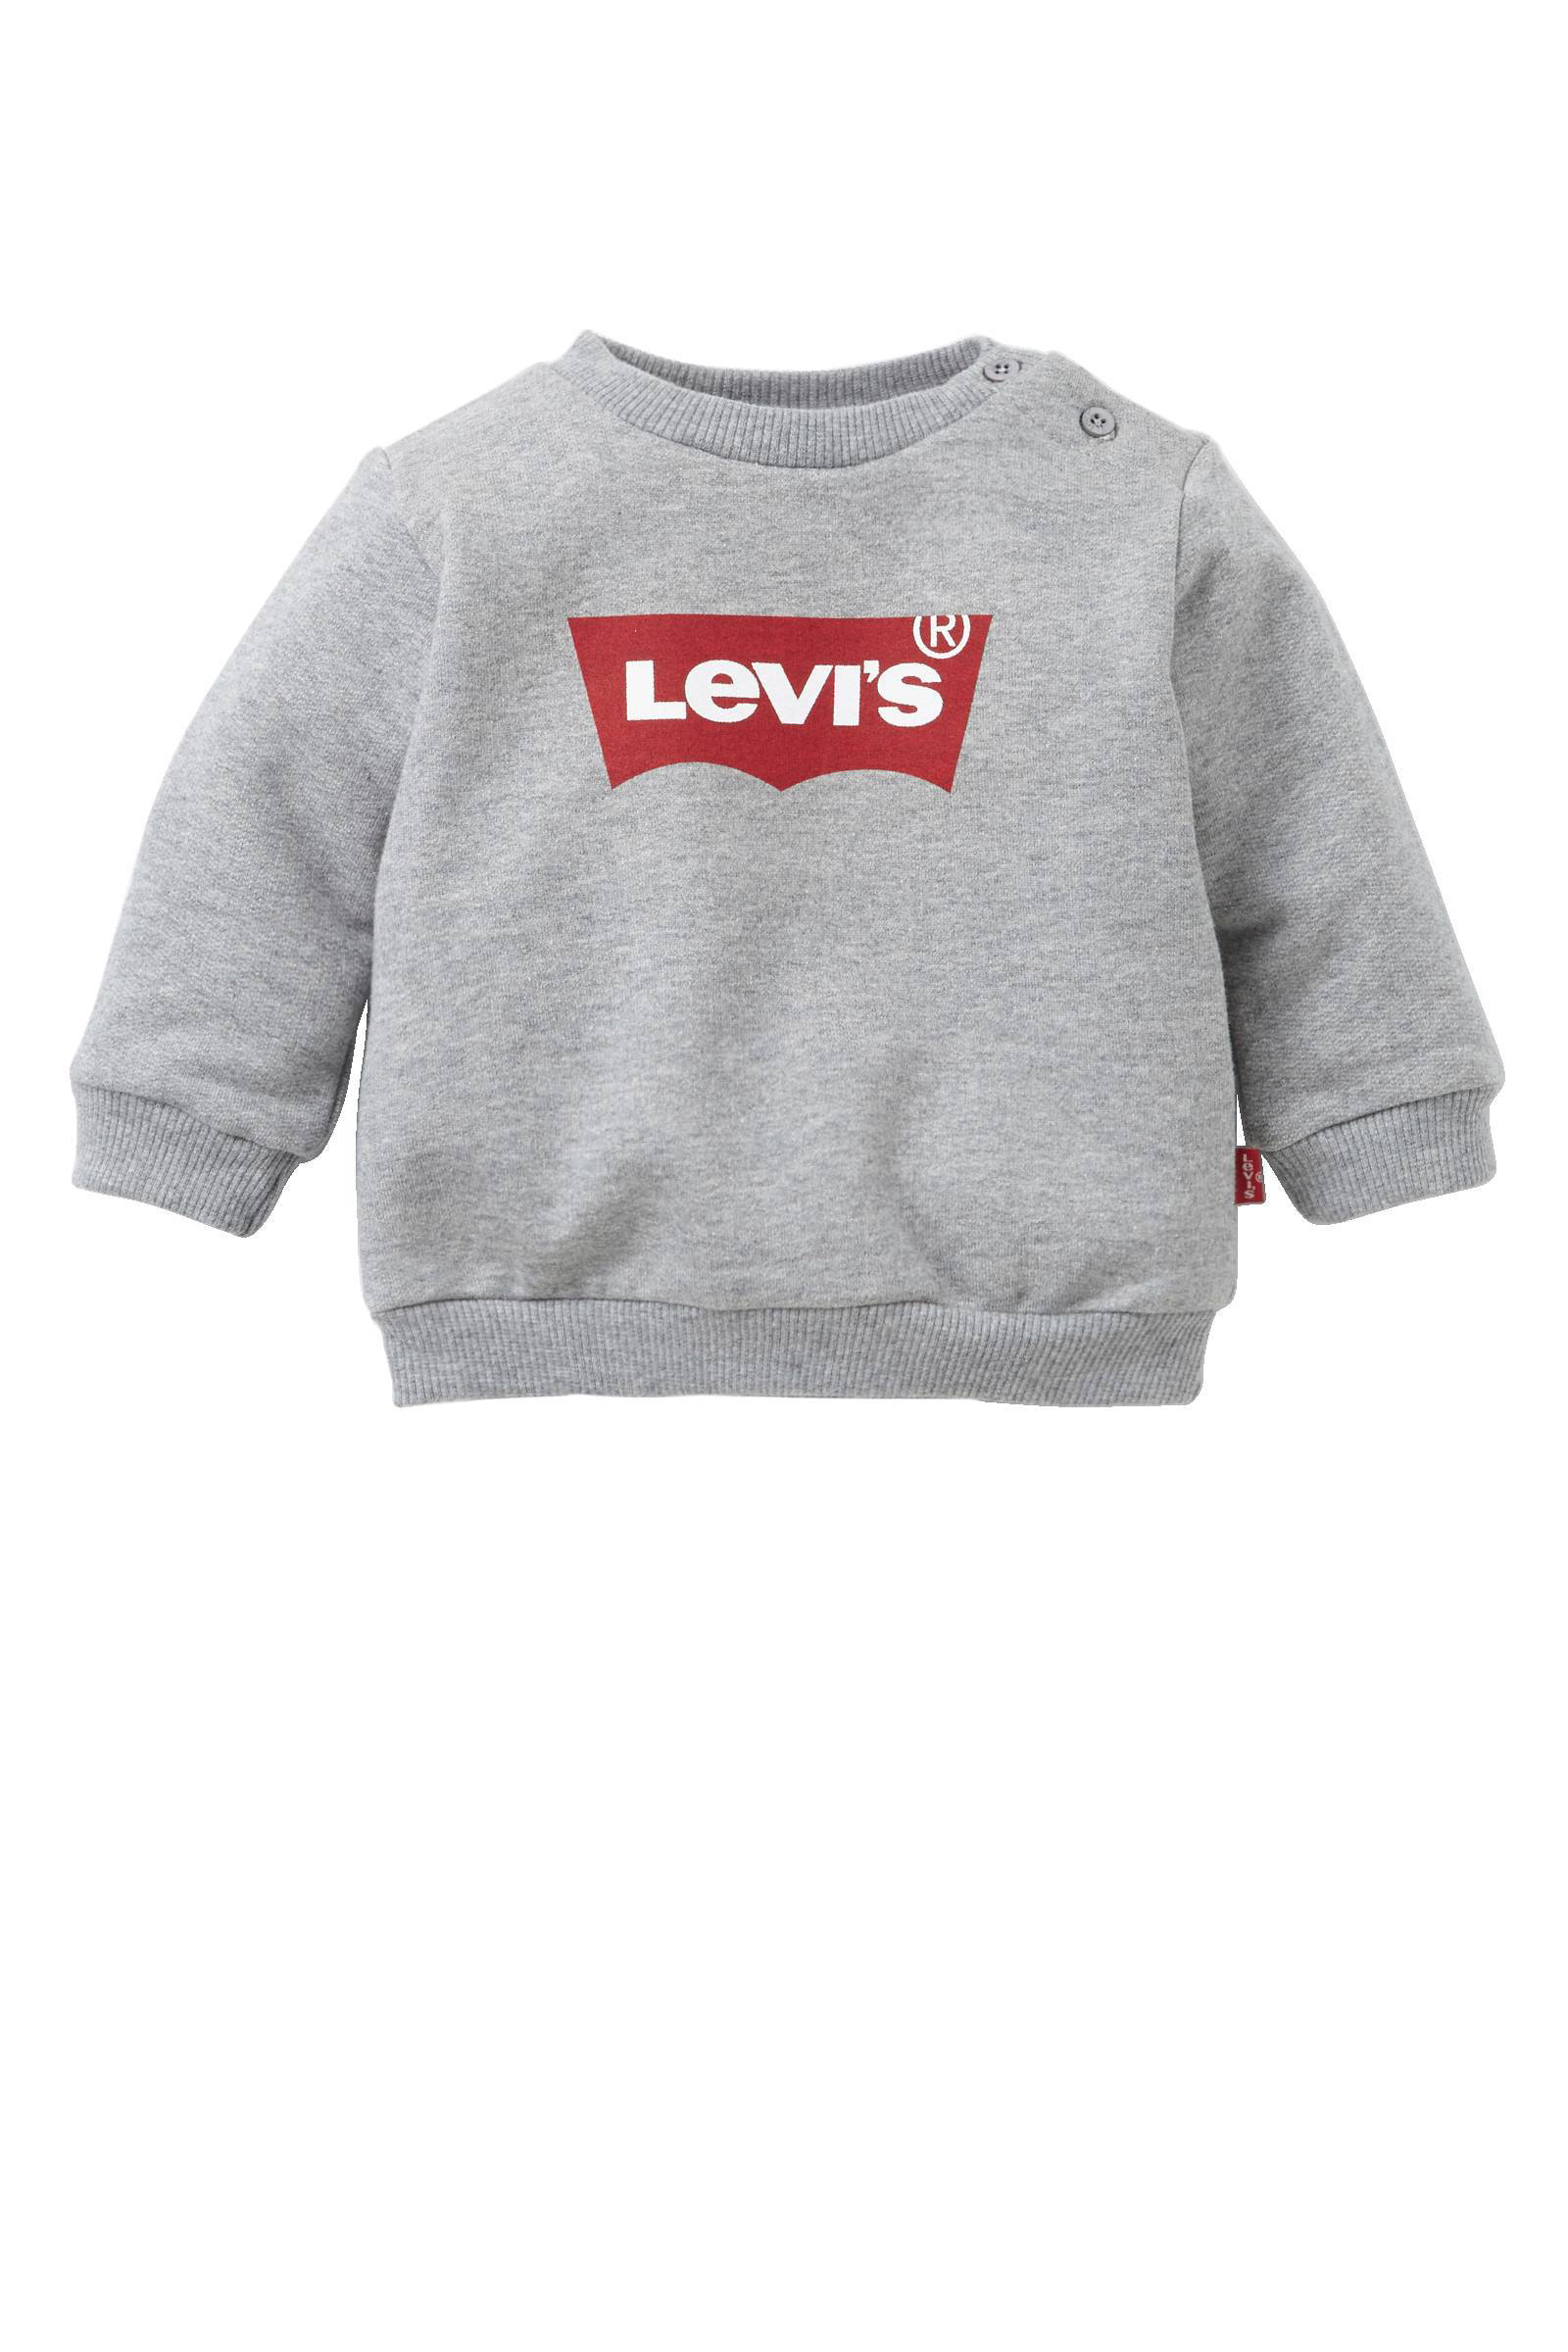 Levi's kids Levi's Kids baby sweater 